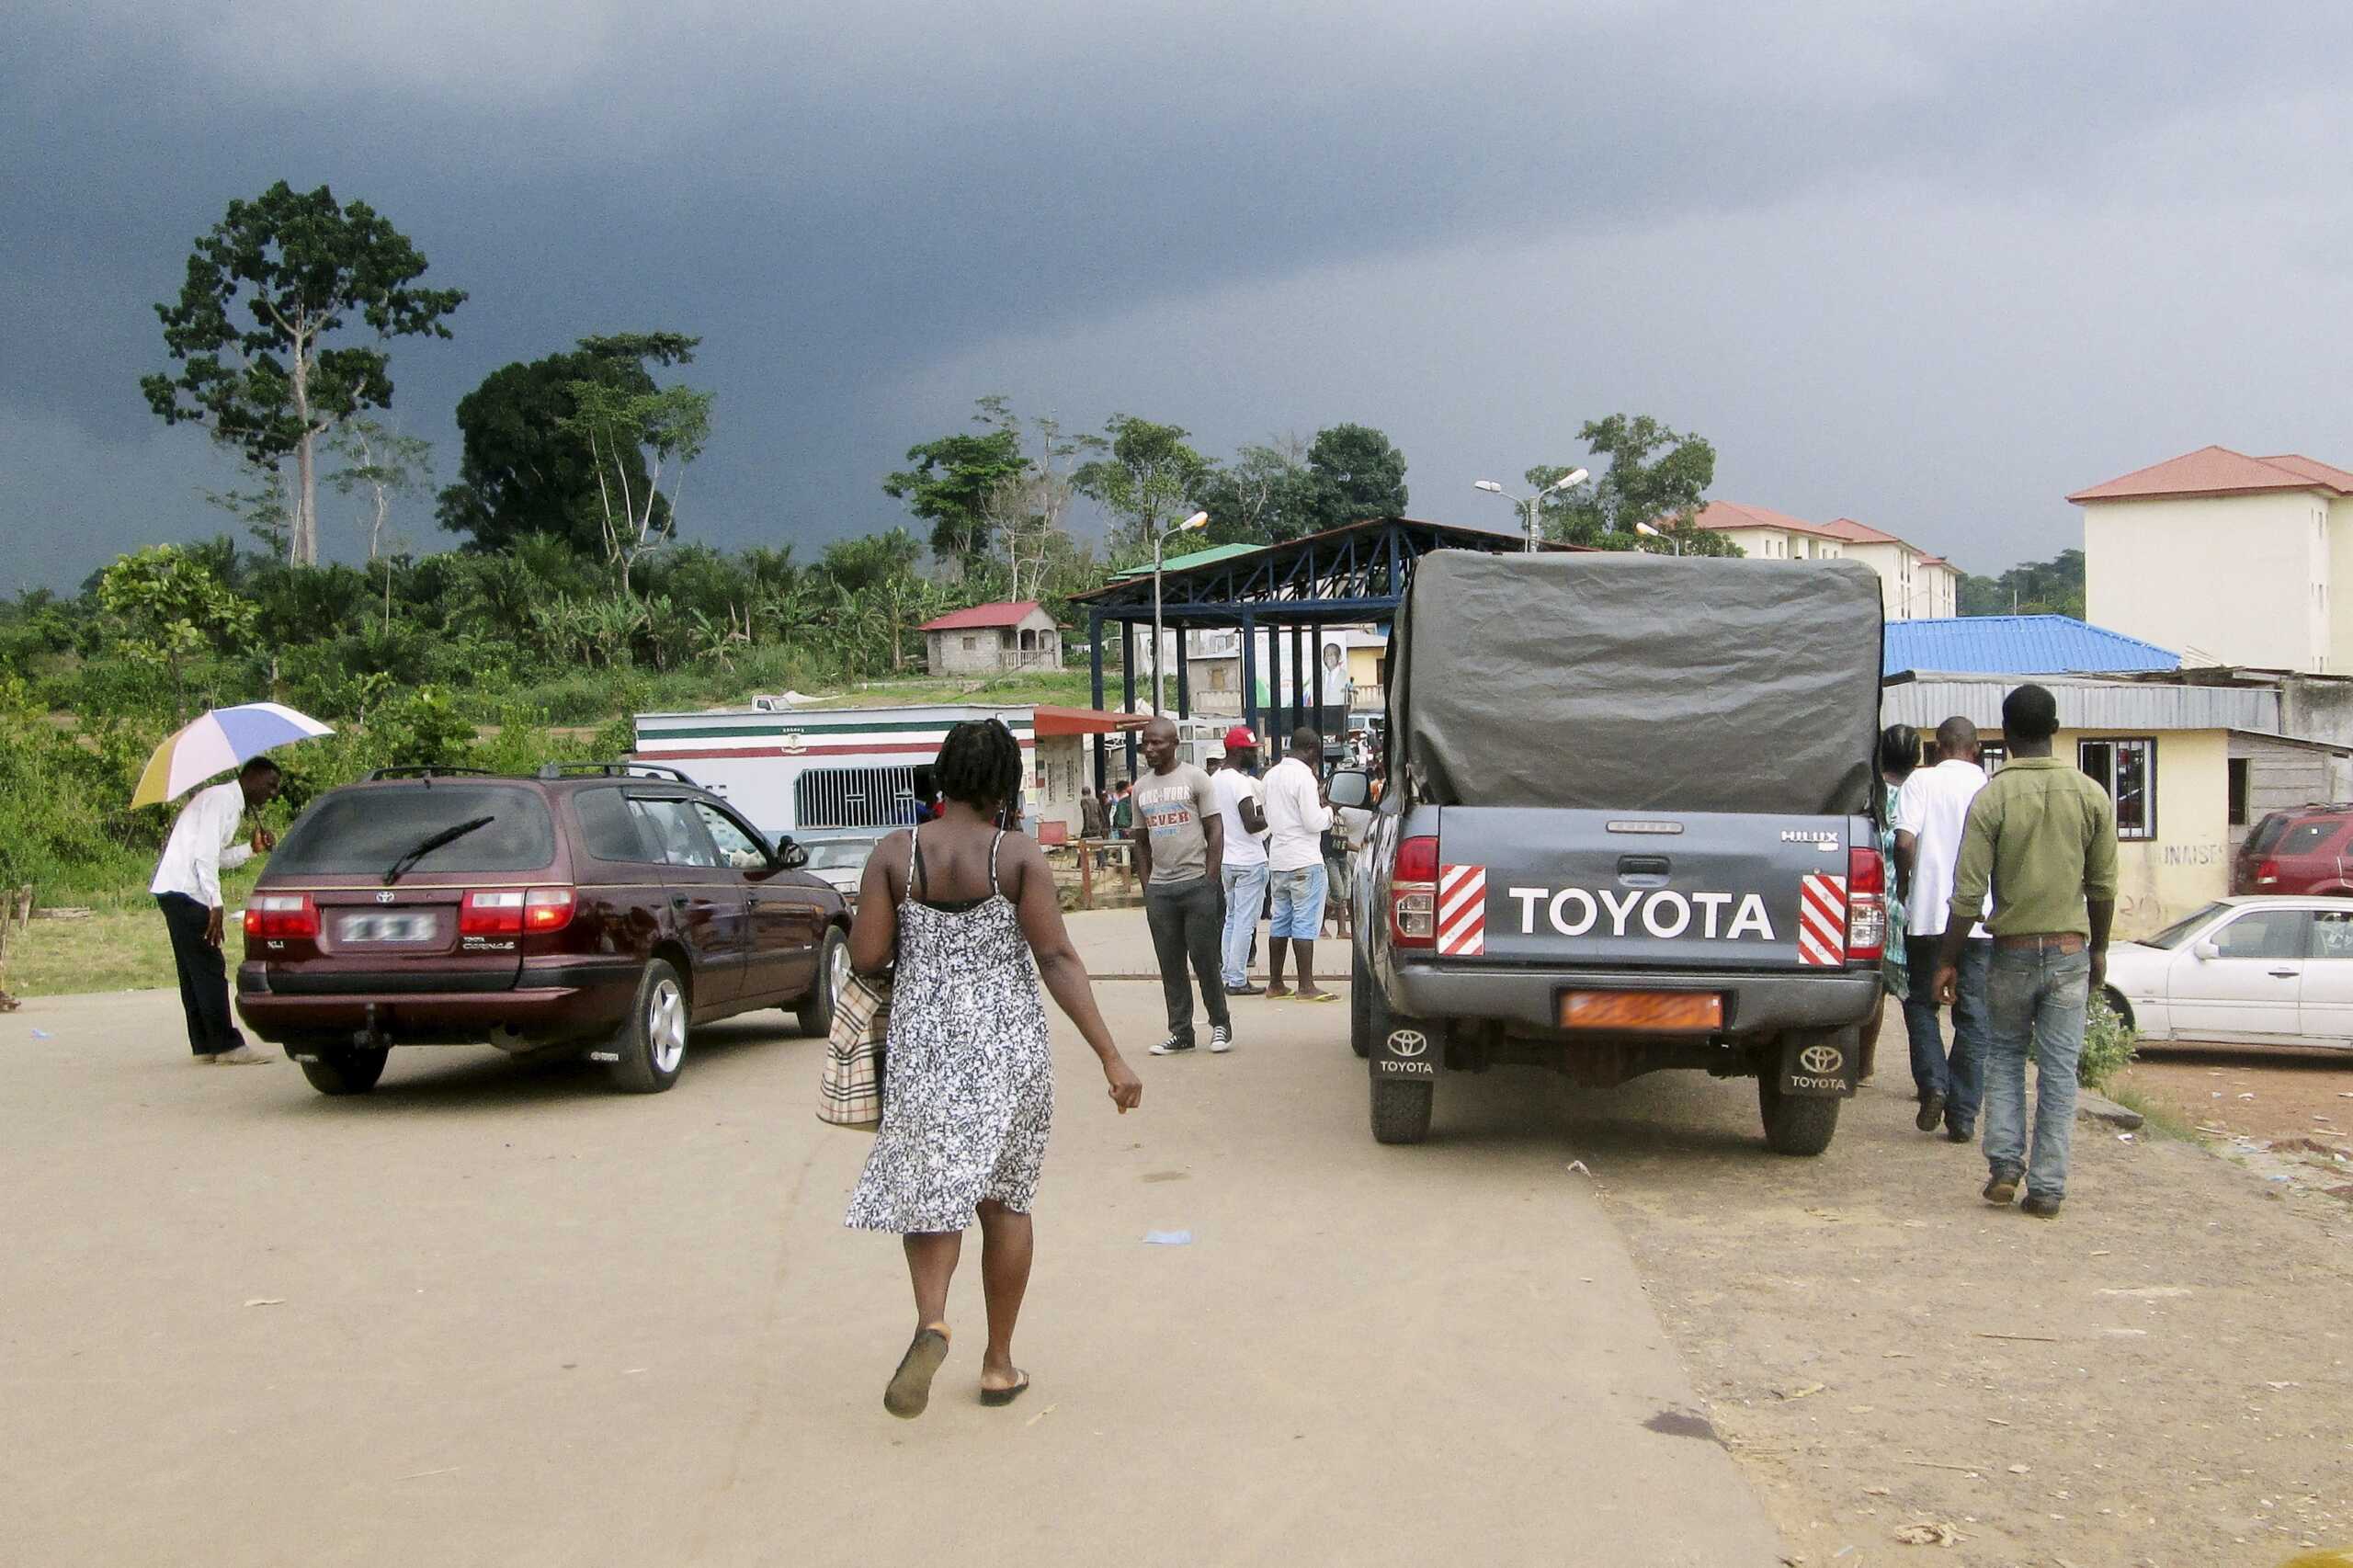 Εννέα άνθρωποι πέθαναν από ιό στην Ισημερινή Γουινέα – Καραντίνα για να ελεγχθεί η επιδημία